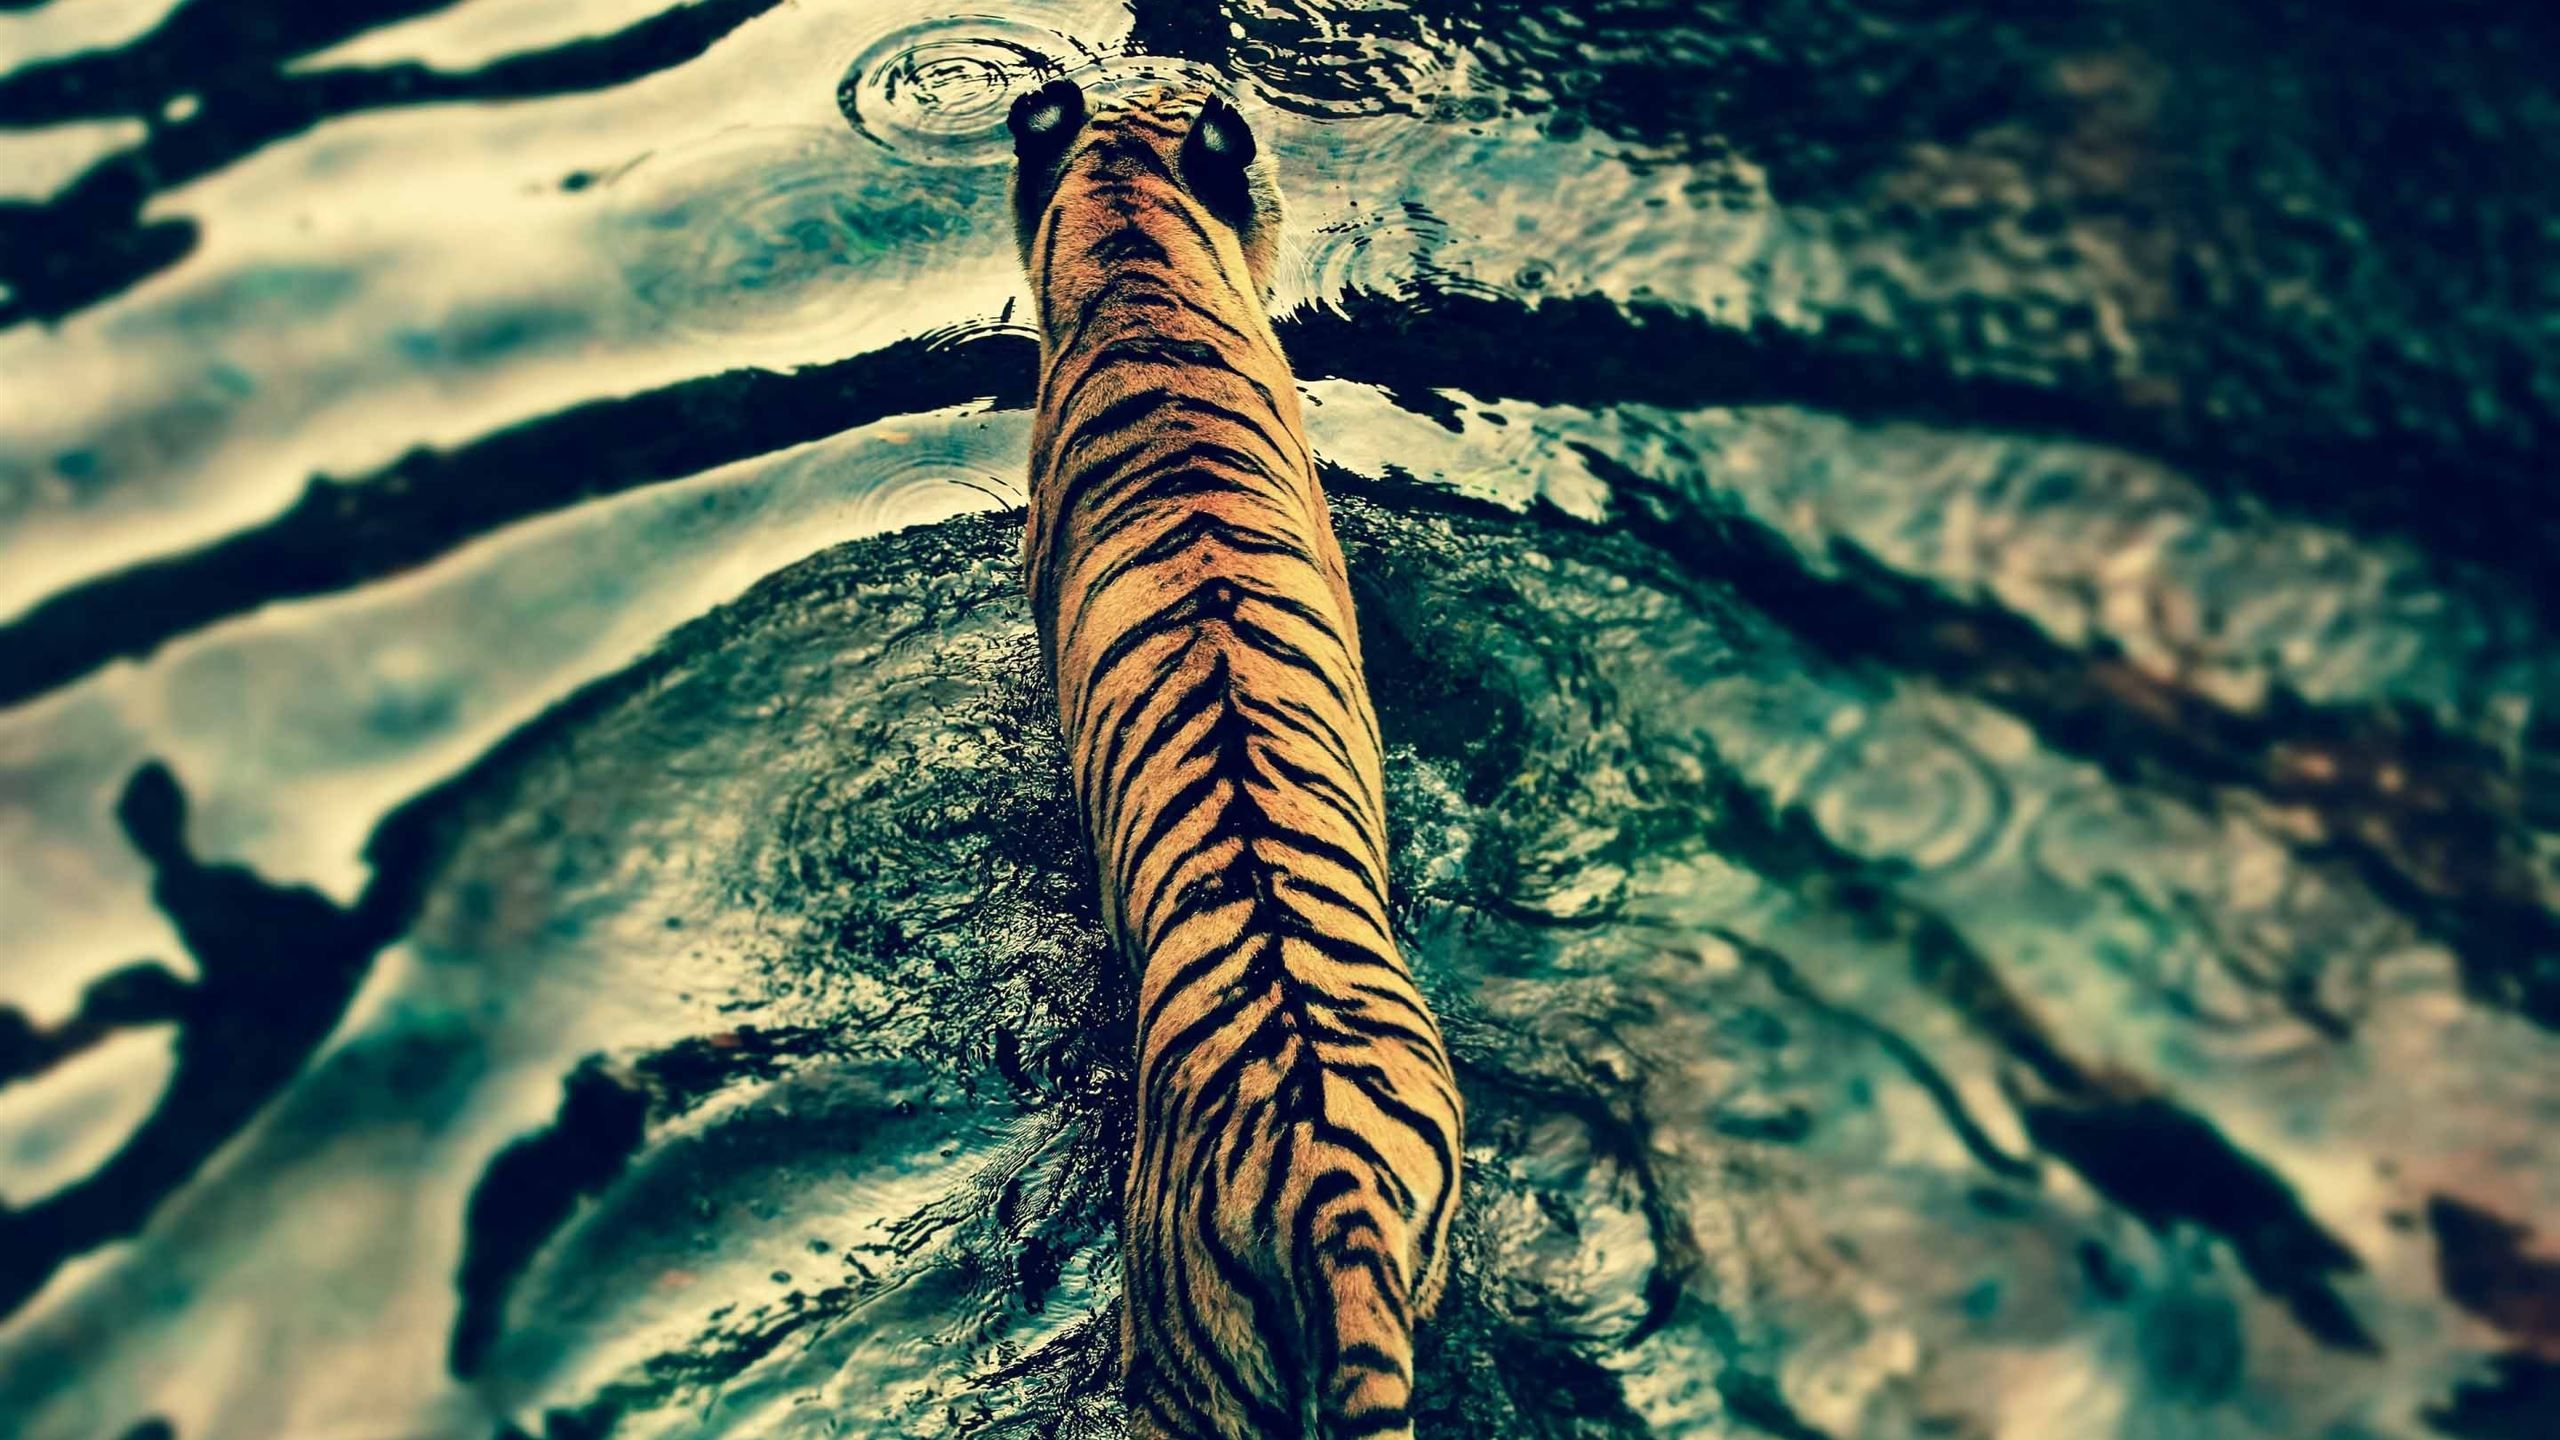 Tiger In Water MacBook Air Wallpaper Download